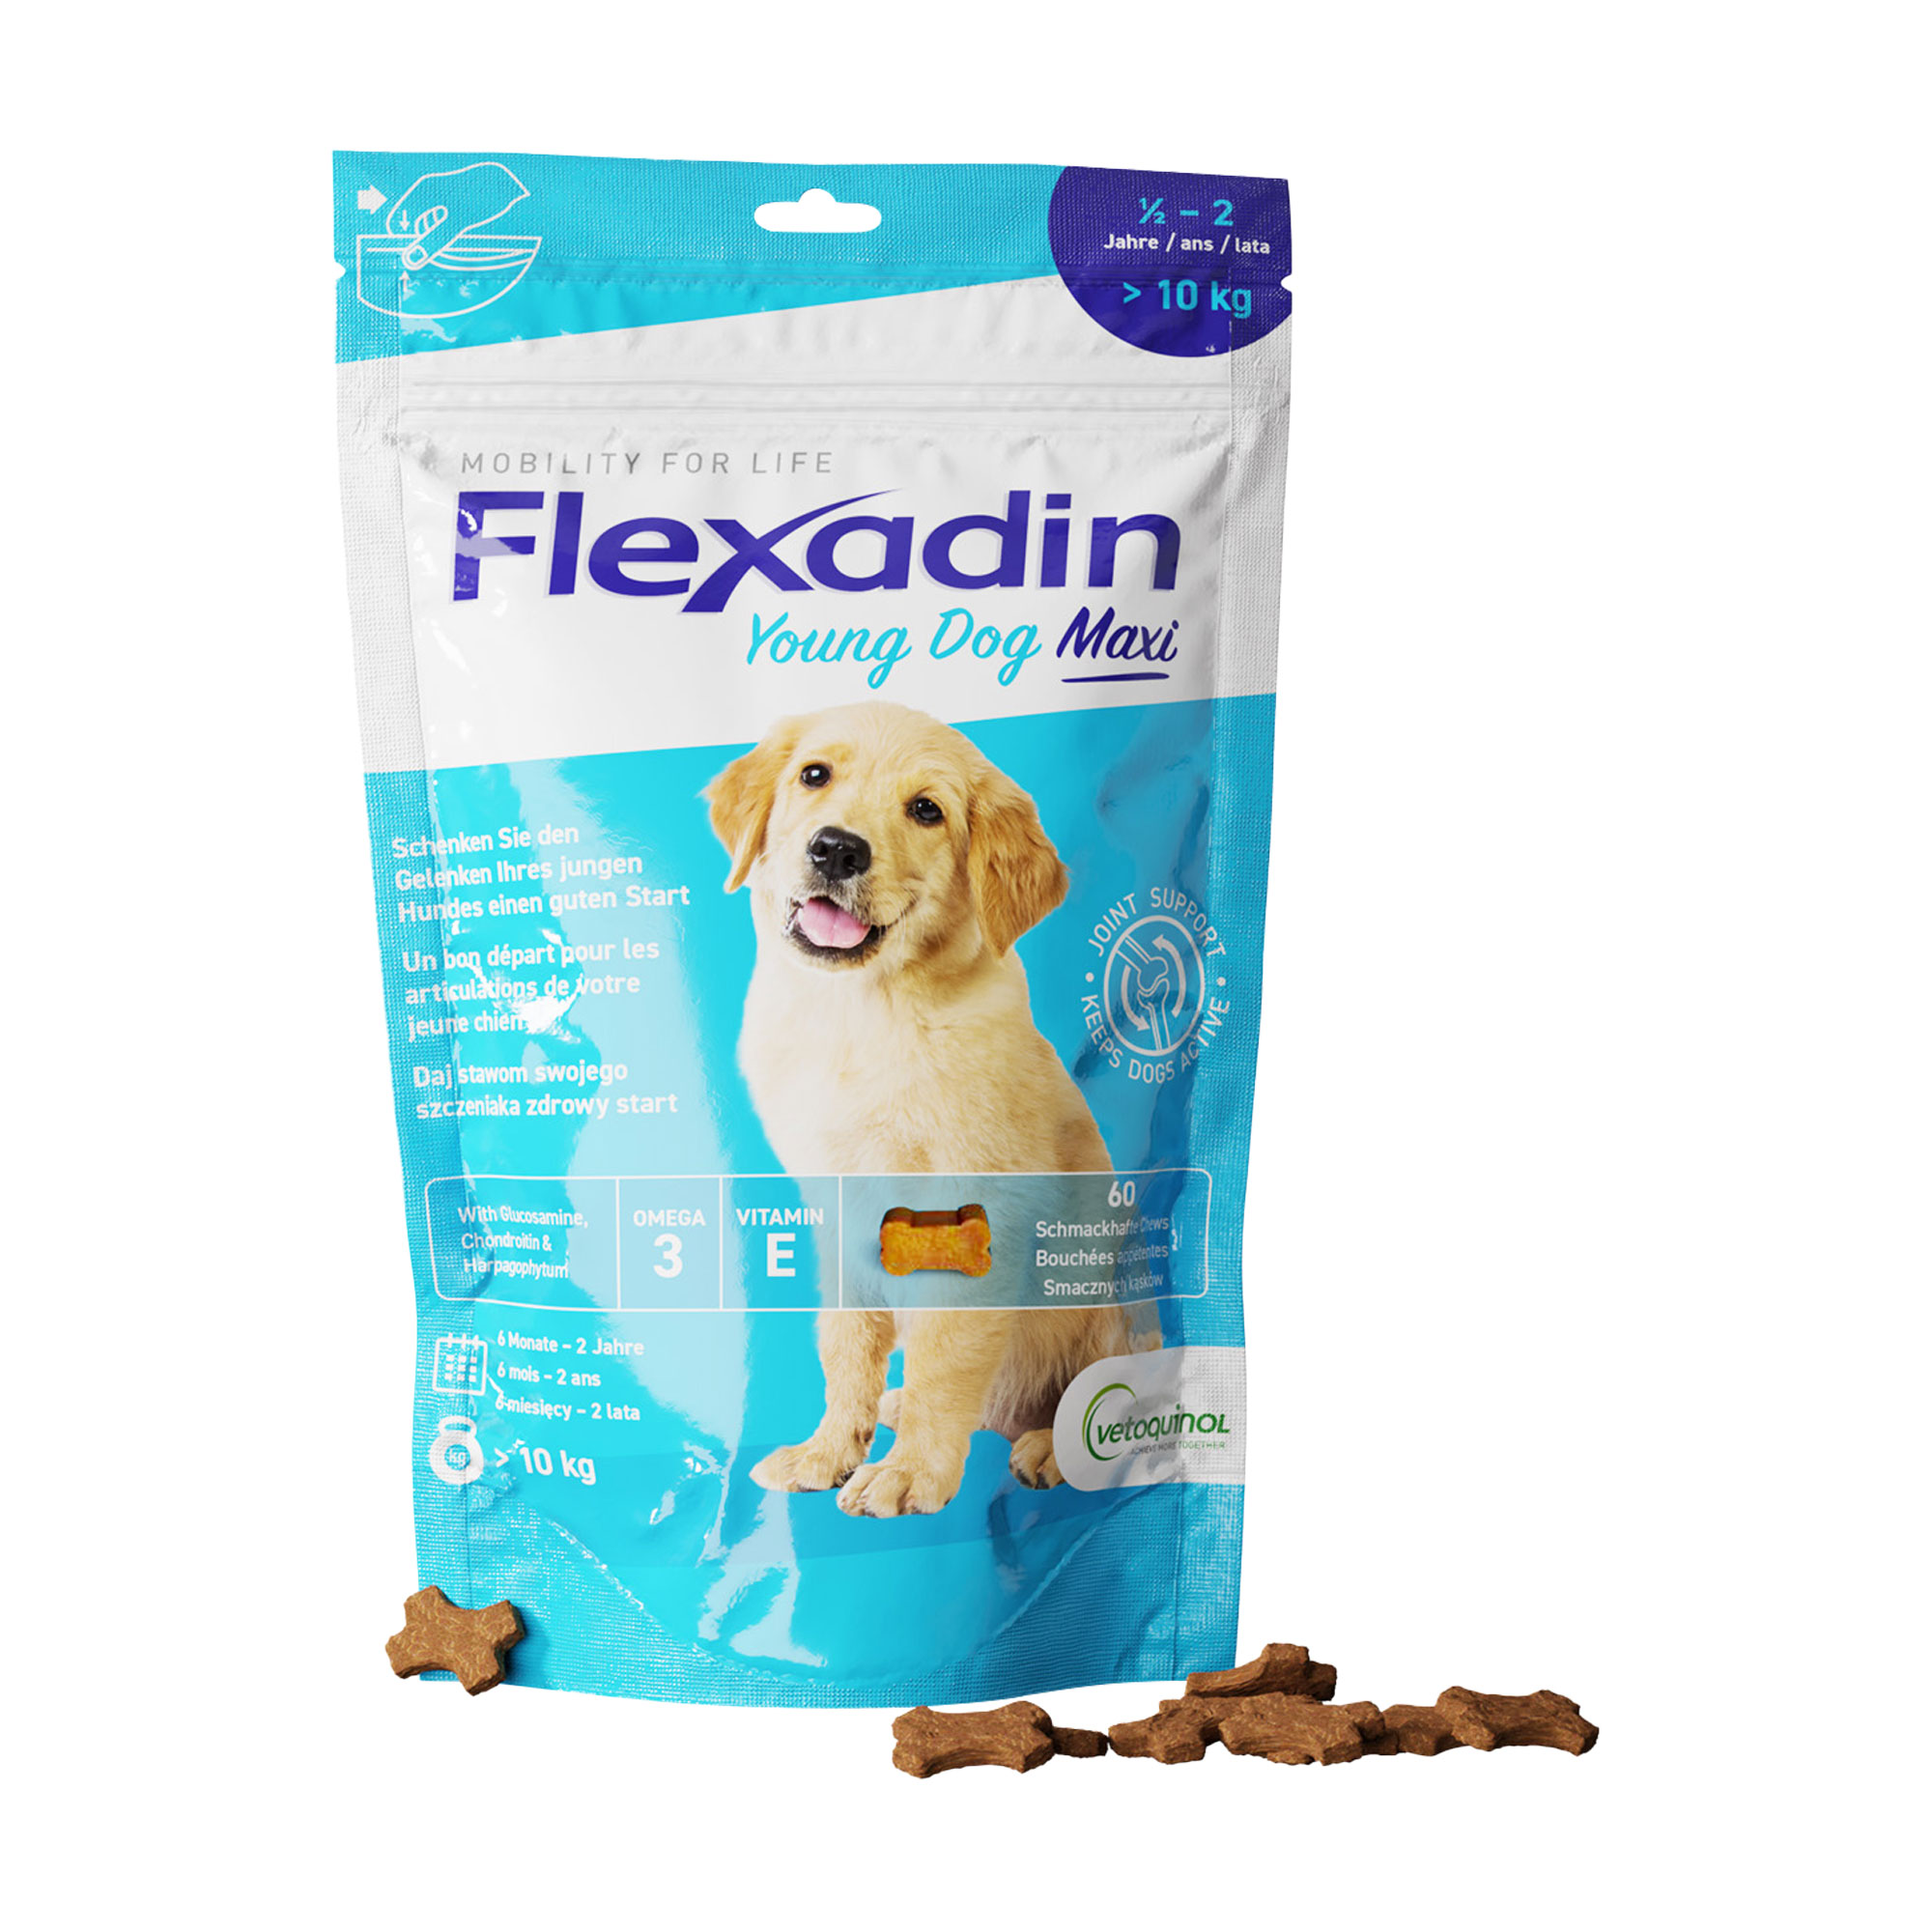 Ergänzungsfutter für junge Hunde ab 10 kg. Schmackhafte Kauleckerli (Chews) mit Glucosamin, Chondroitin und Omega-3 Fettsäuren.